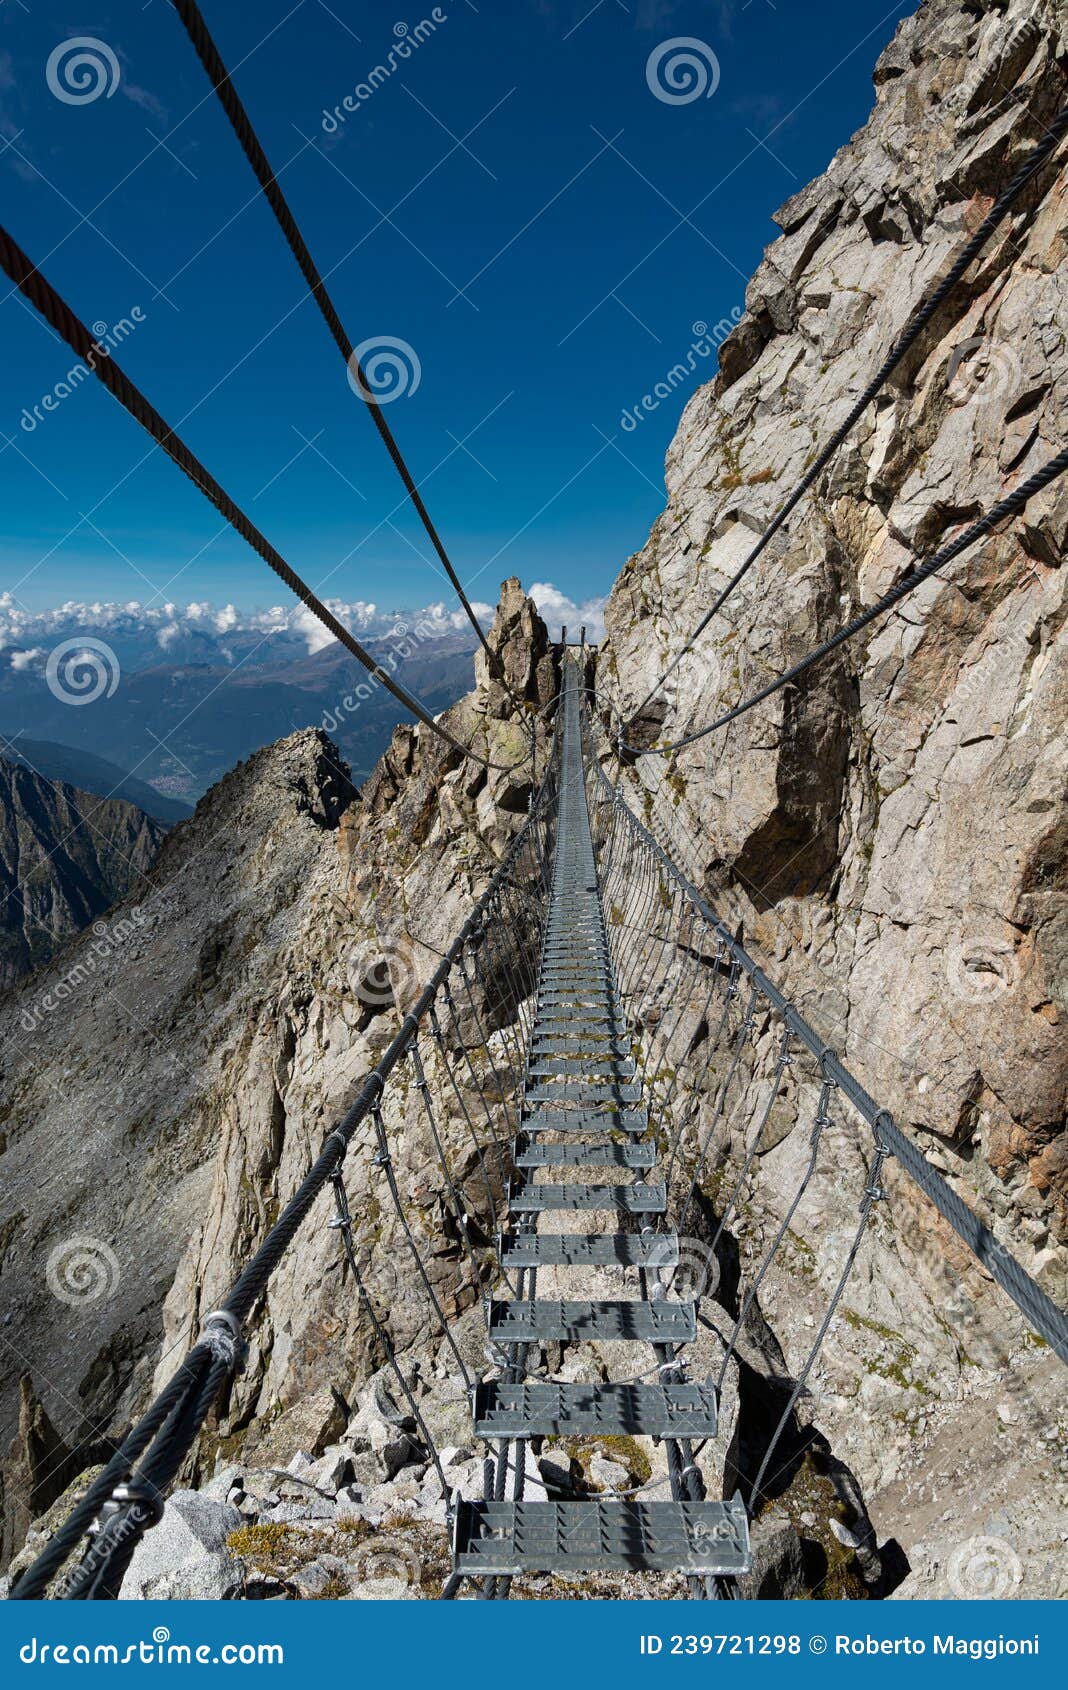 alpine rope suspension bridge. sentiero dei fiori, tonale, italy